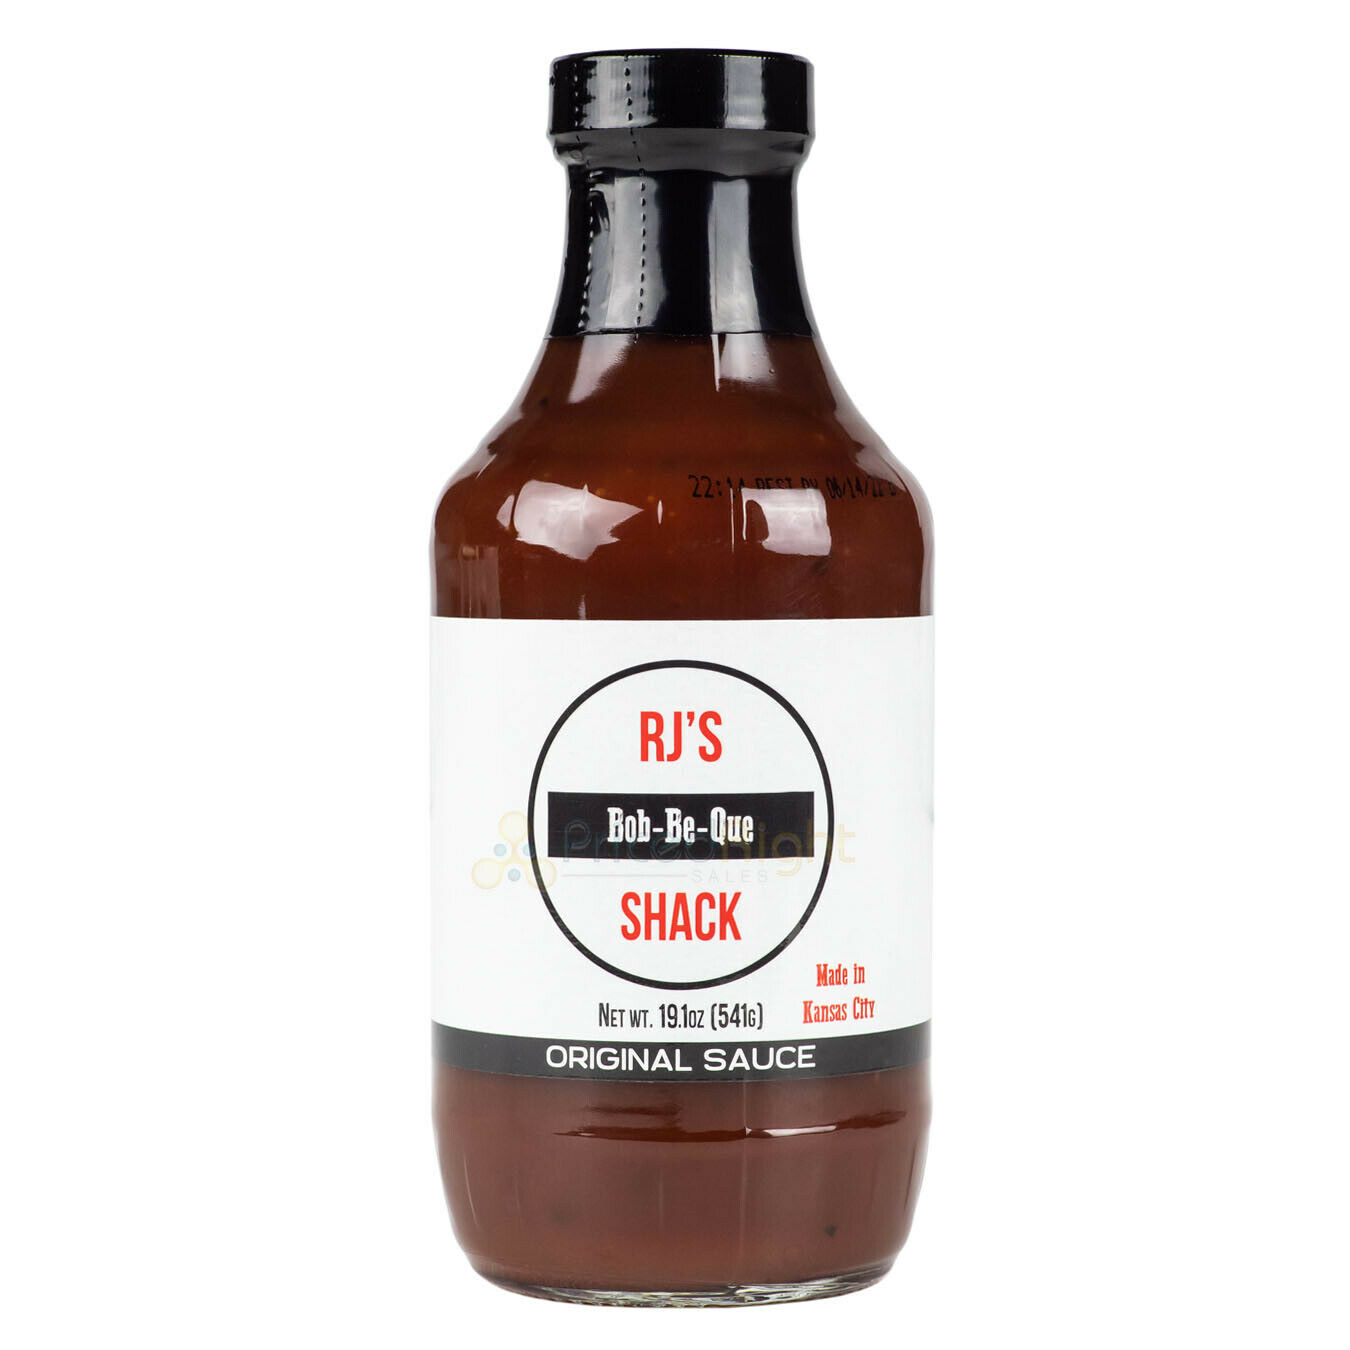 Rj's Bob-be-que Shack Bbq Original Sauce 19.1 Ounce Jar Made In Kansas City